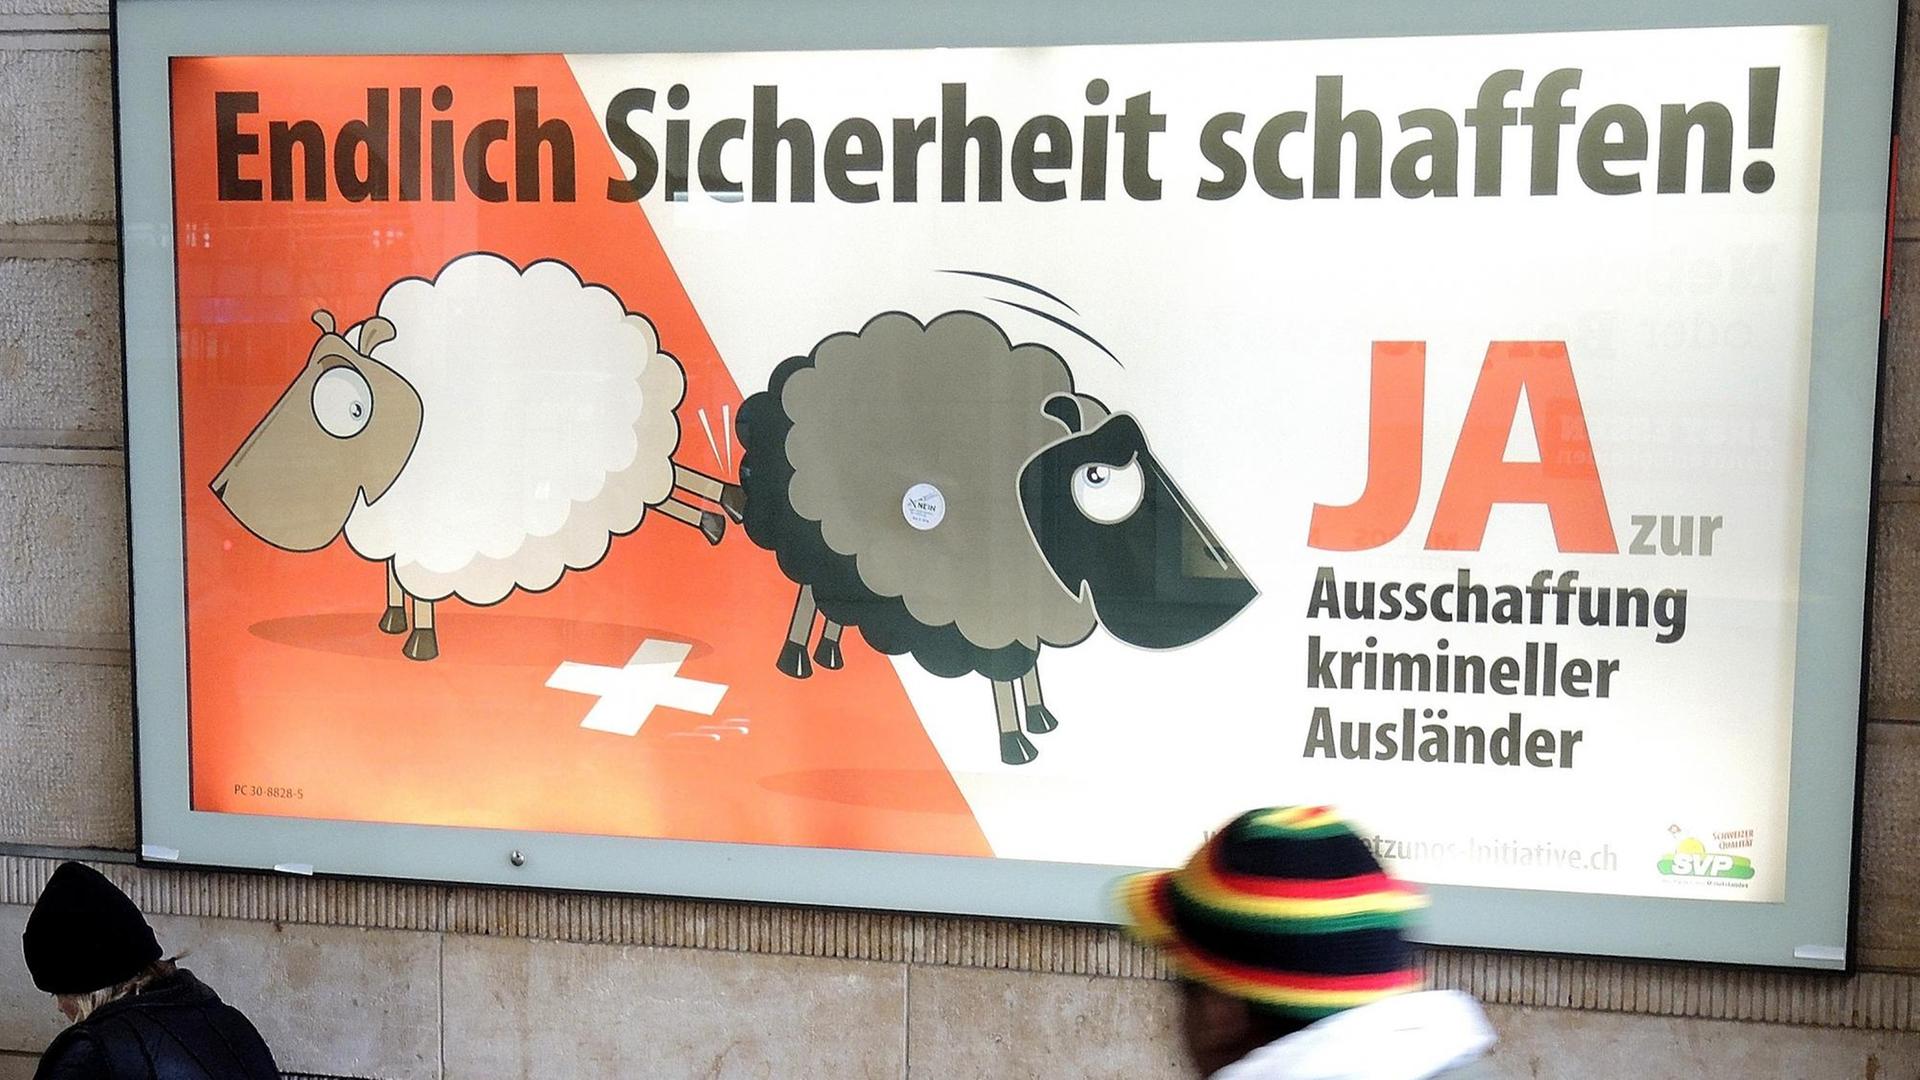 Ein Mann geht am Hauptbahnhof von Basel an einem Plakat der Schweizerischen Volkspartei (SVP) vorbei, auf dem die Ausweisung (Ausschaffung) krimineller Ausländer gefordert wird.